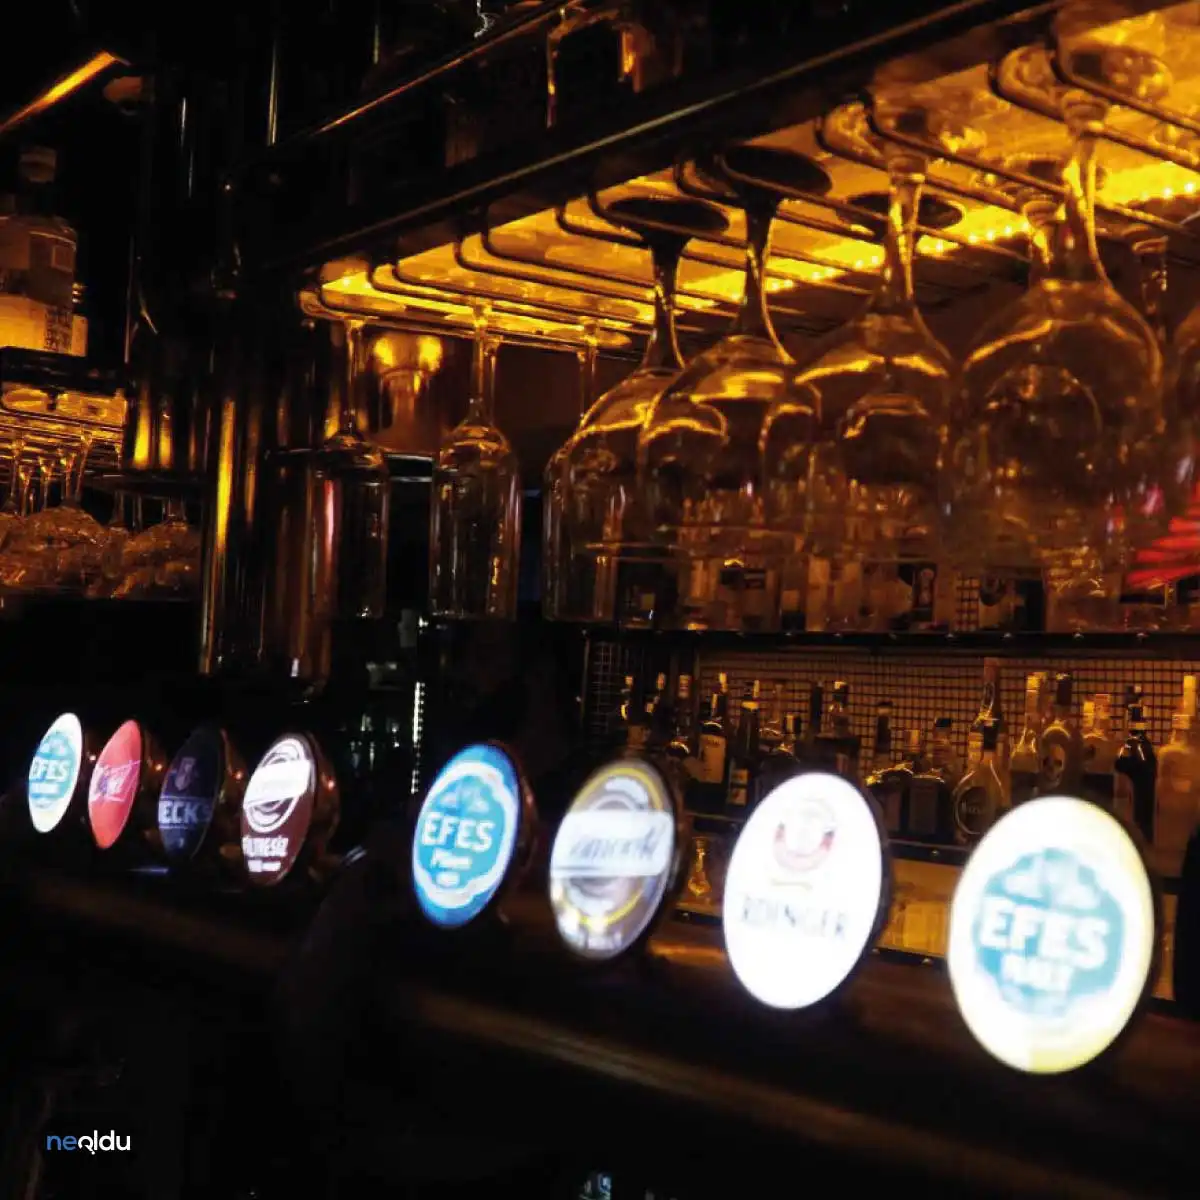 İzmir'in En İyi Pub Mekanları